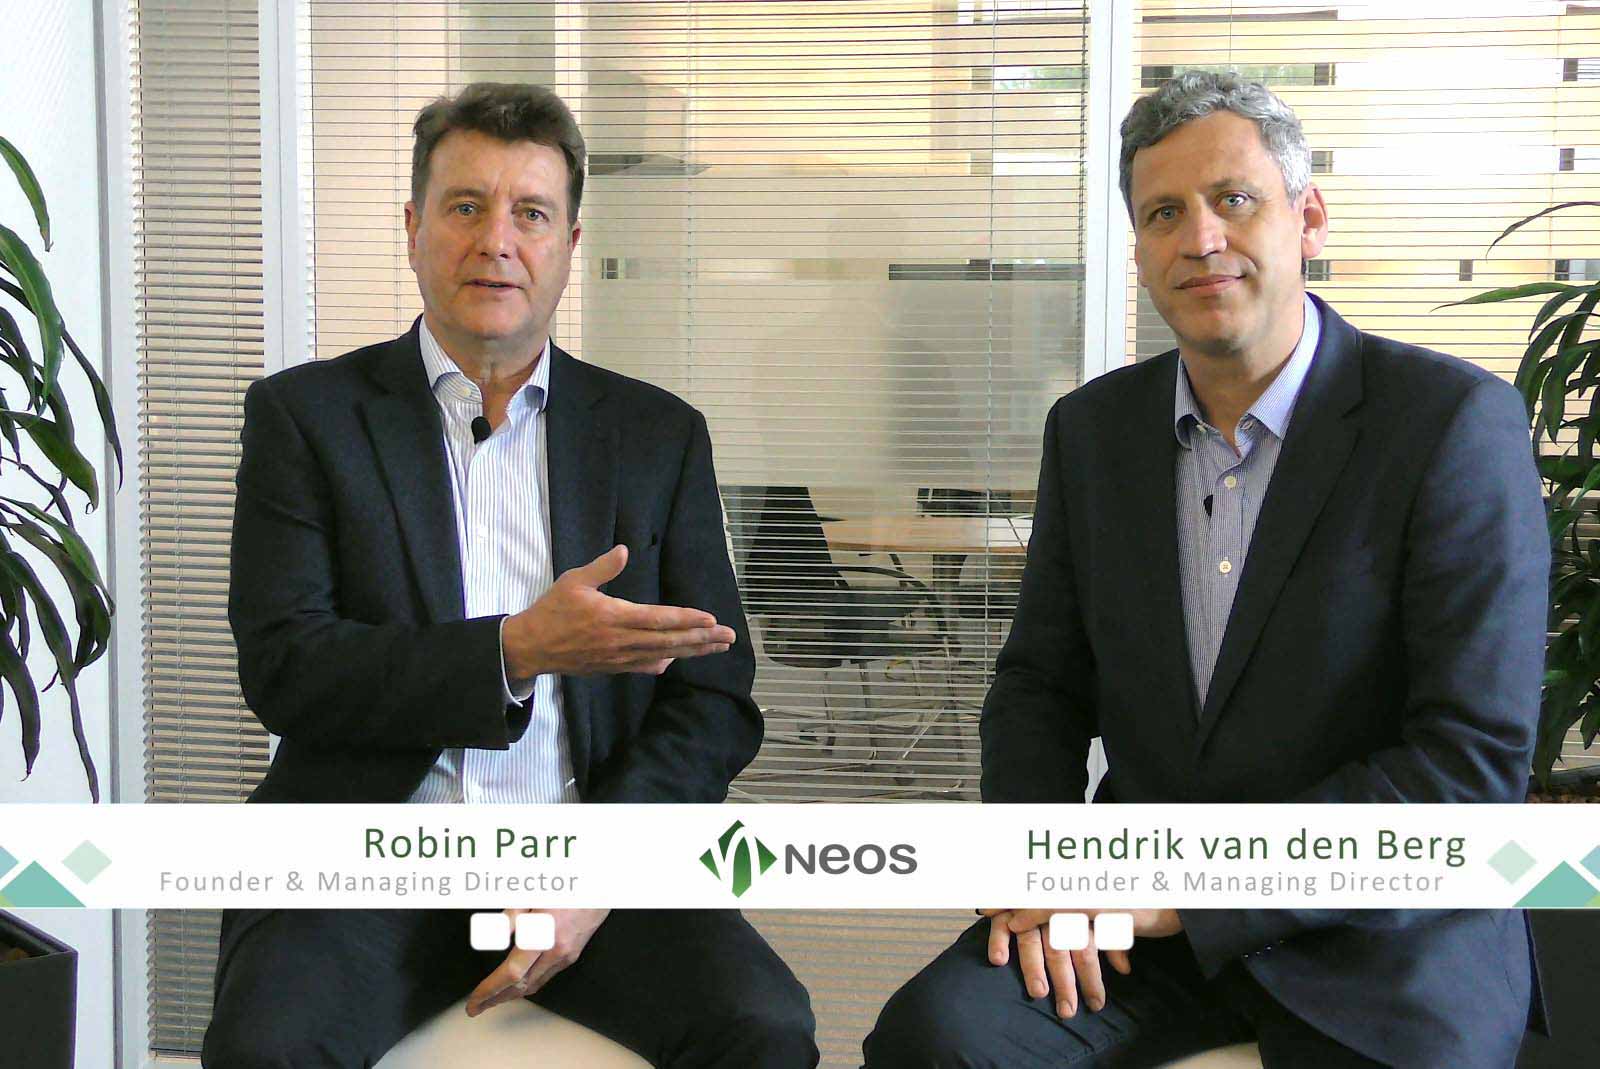 Hendrik van den Berg und Robin Parr im Interview